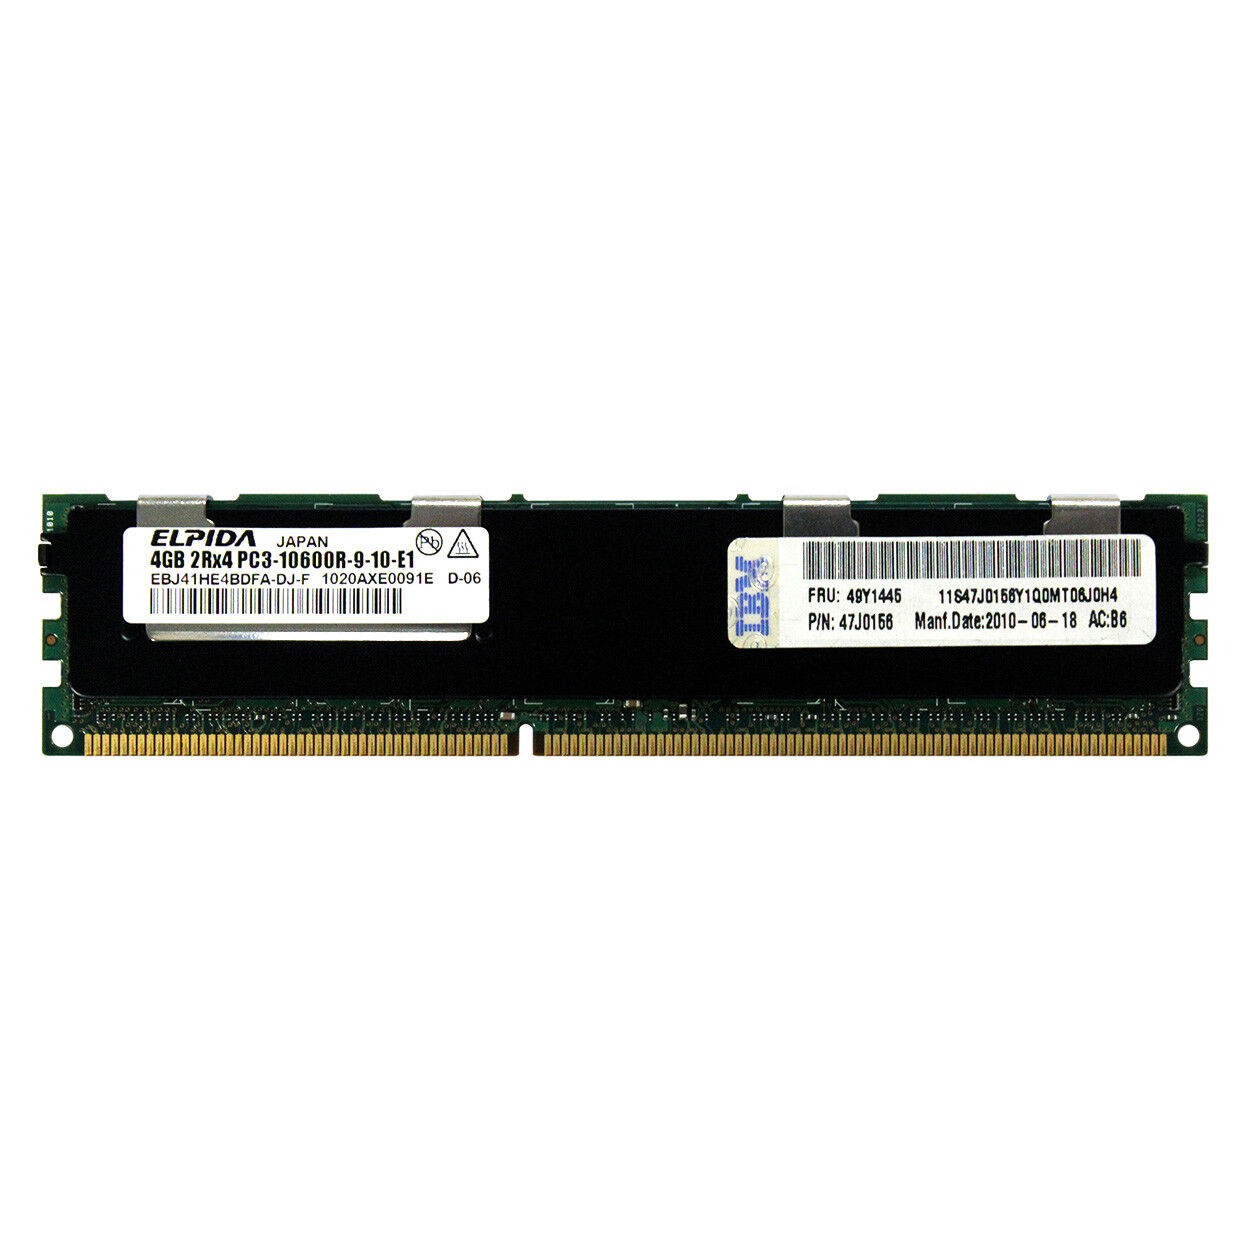 IBM Genuine 4GB 2Rx4 PC3-10600R DDR3 1333MHz 1.5V ECC REG RDIMM Memory RAM 1x4G